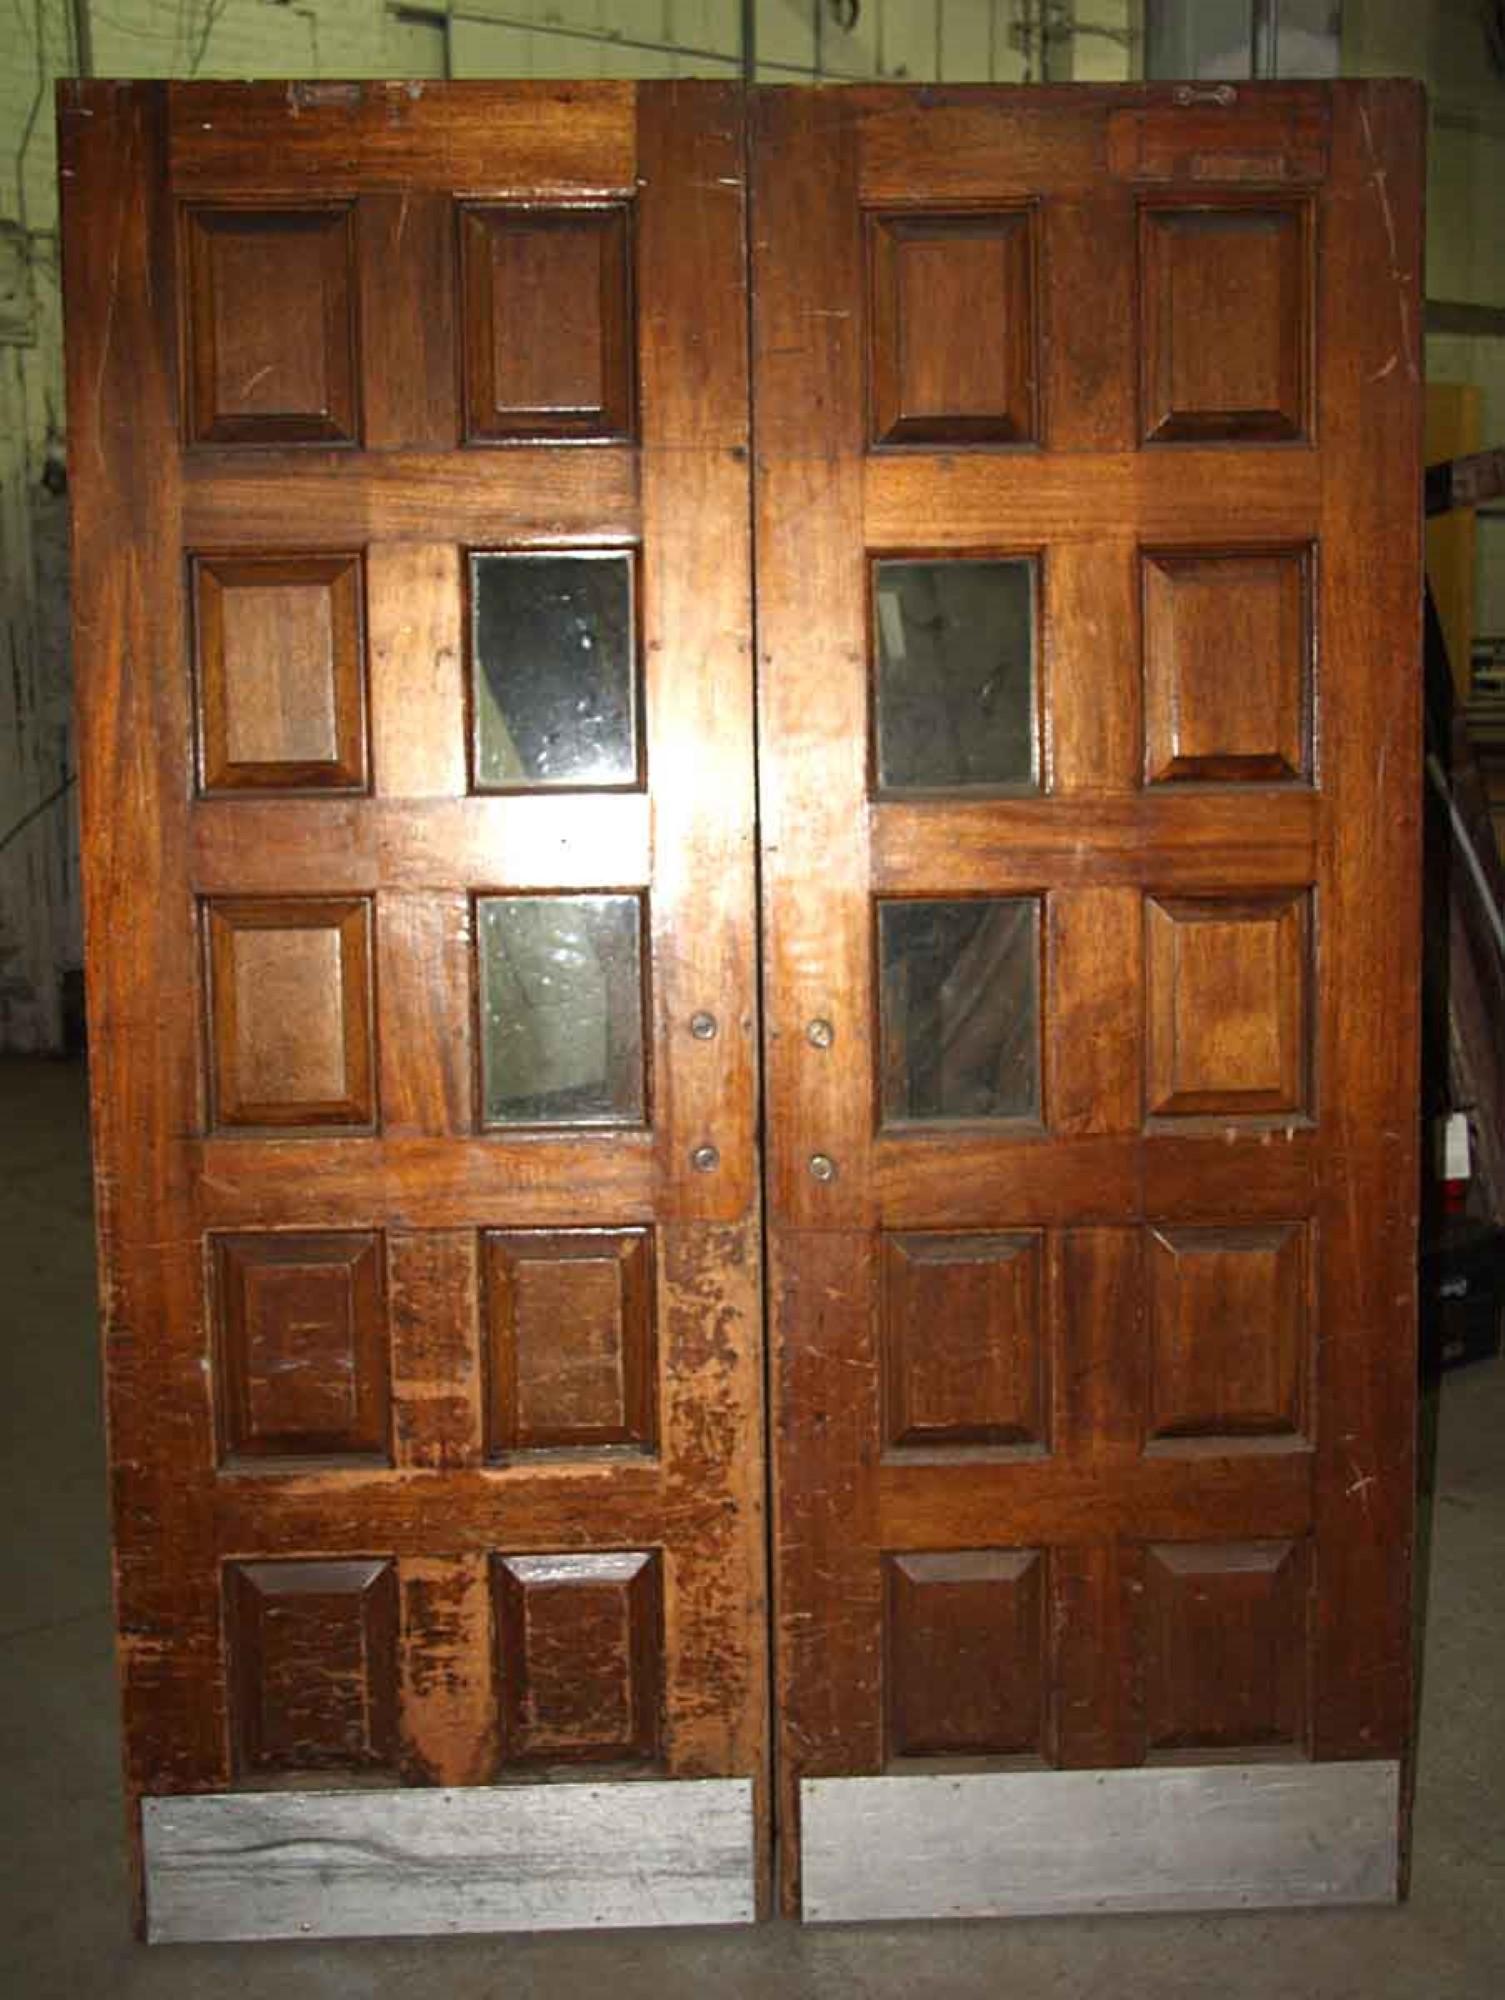 1940s doors